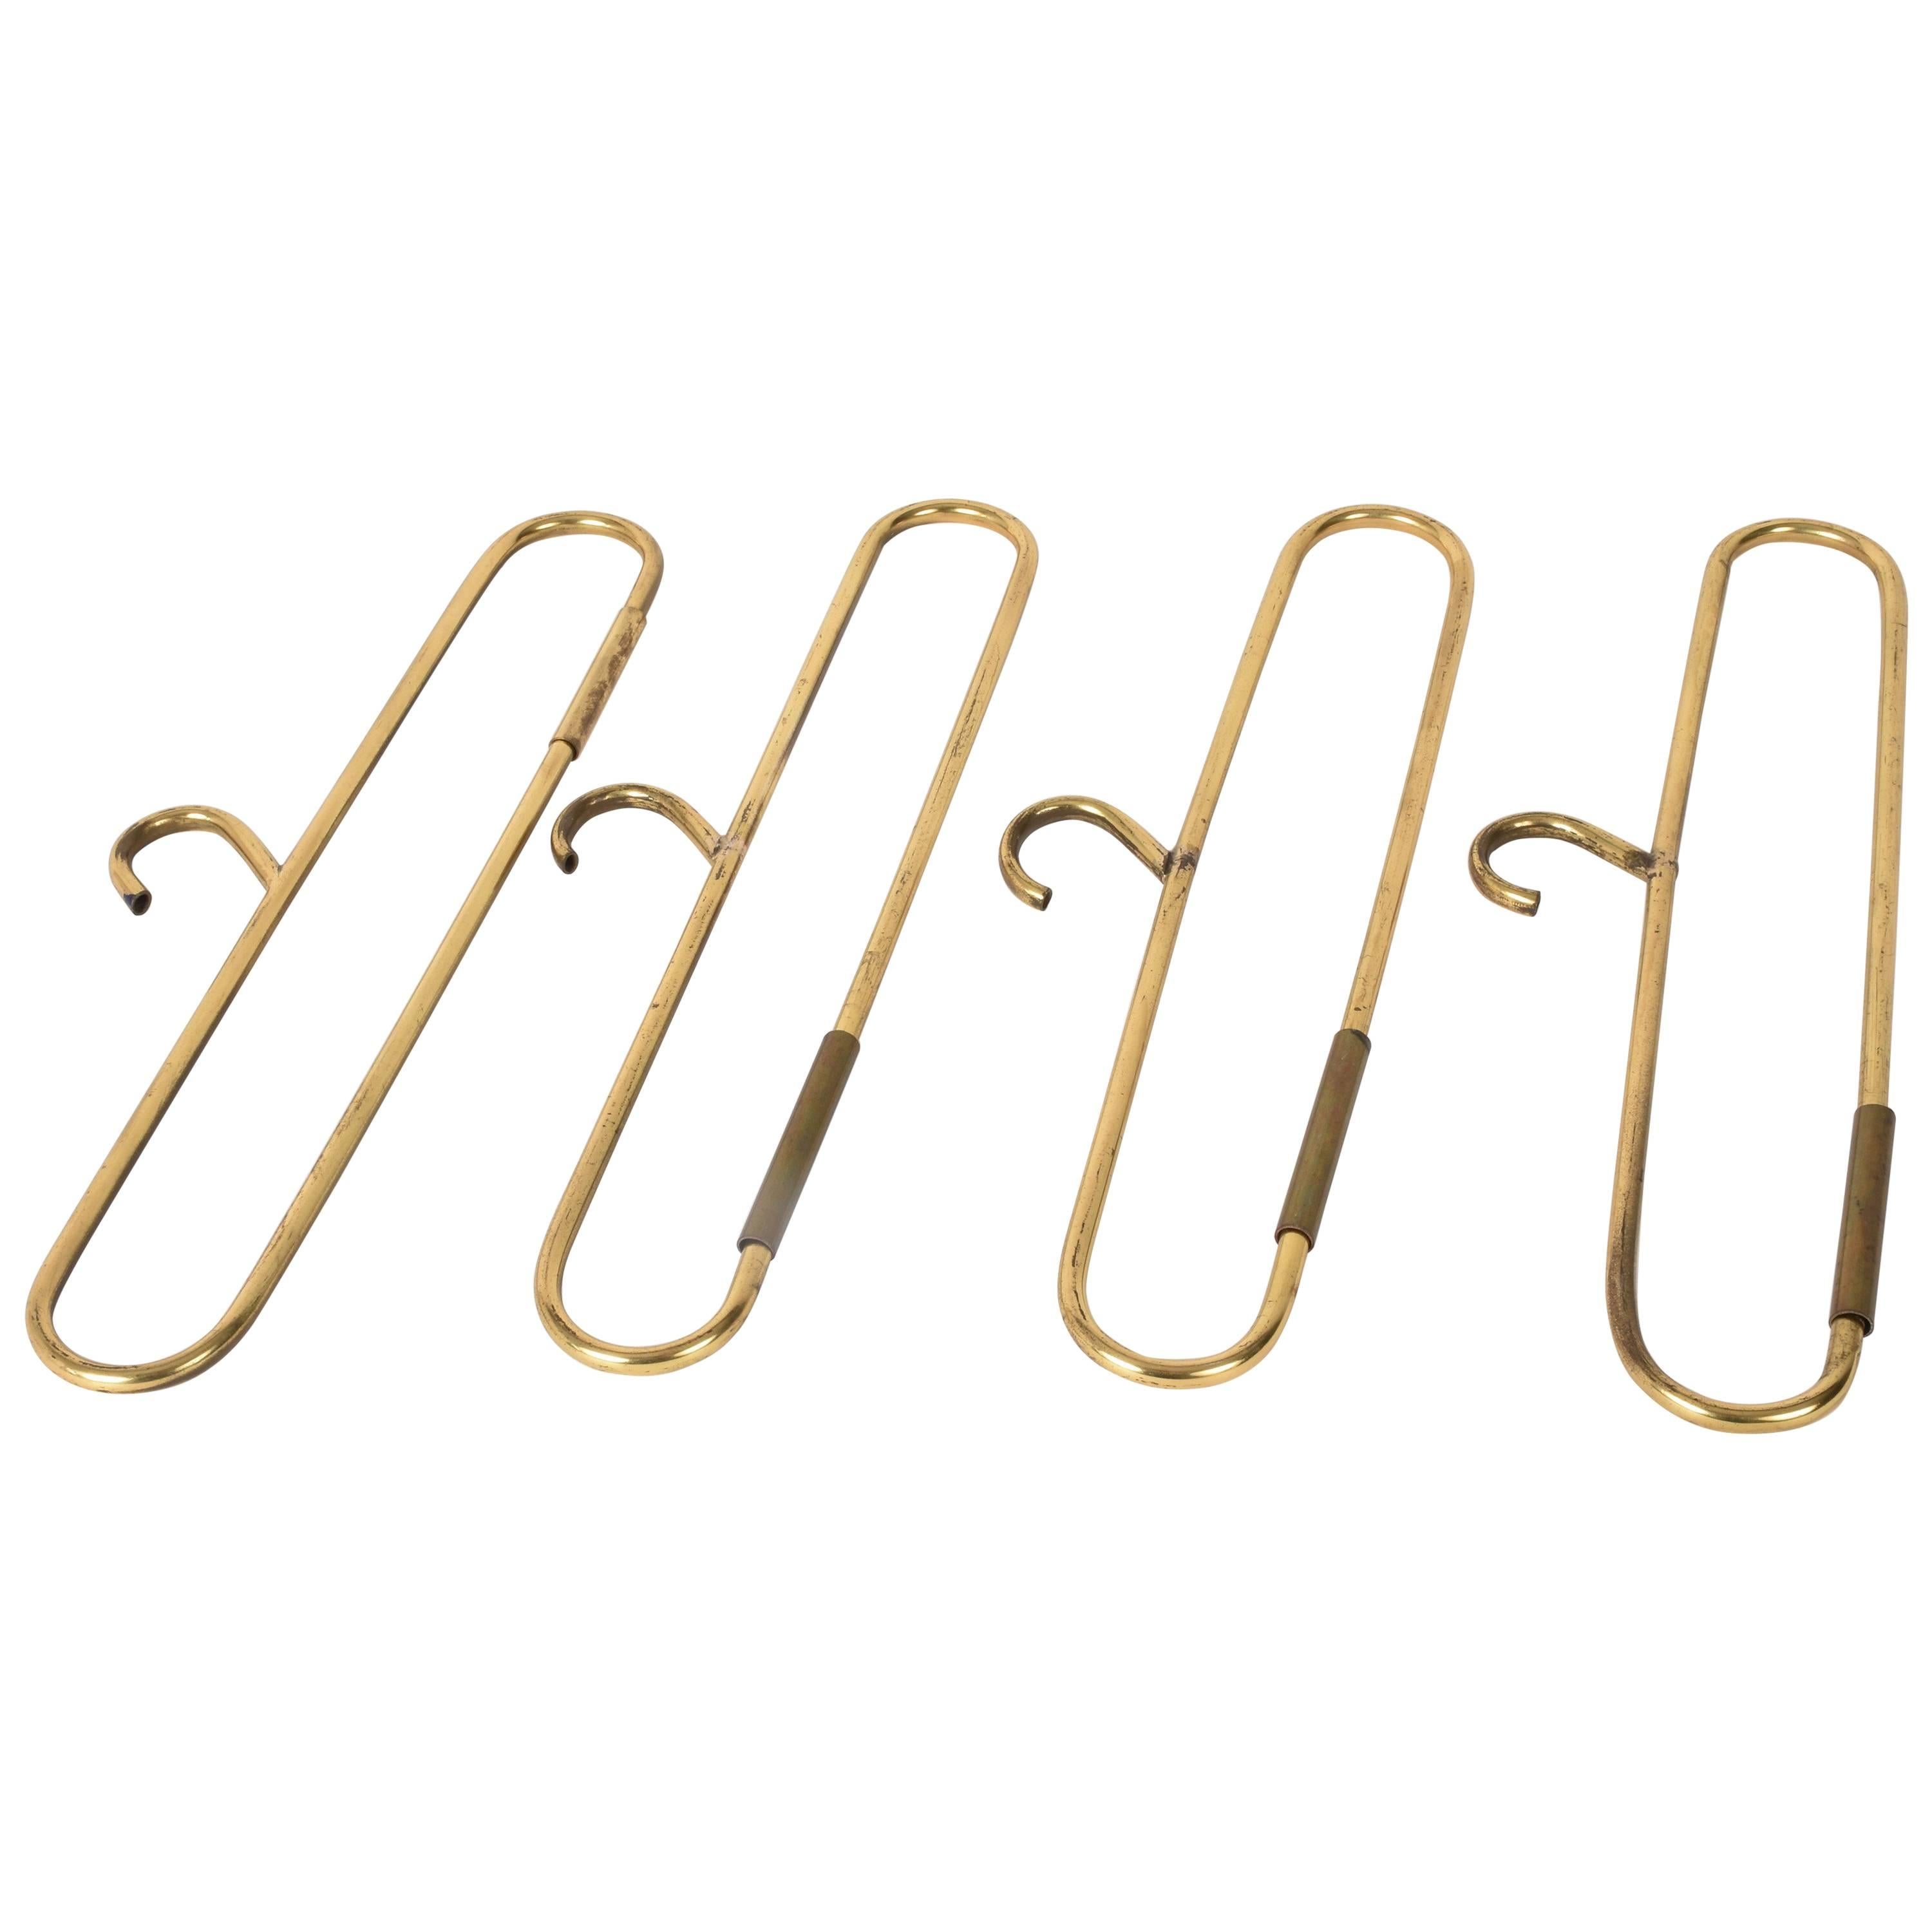 Set of Four Brass Coat Hangers